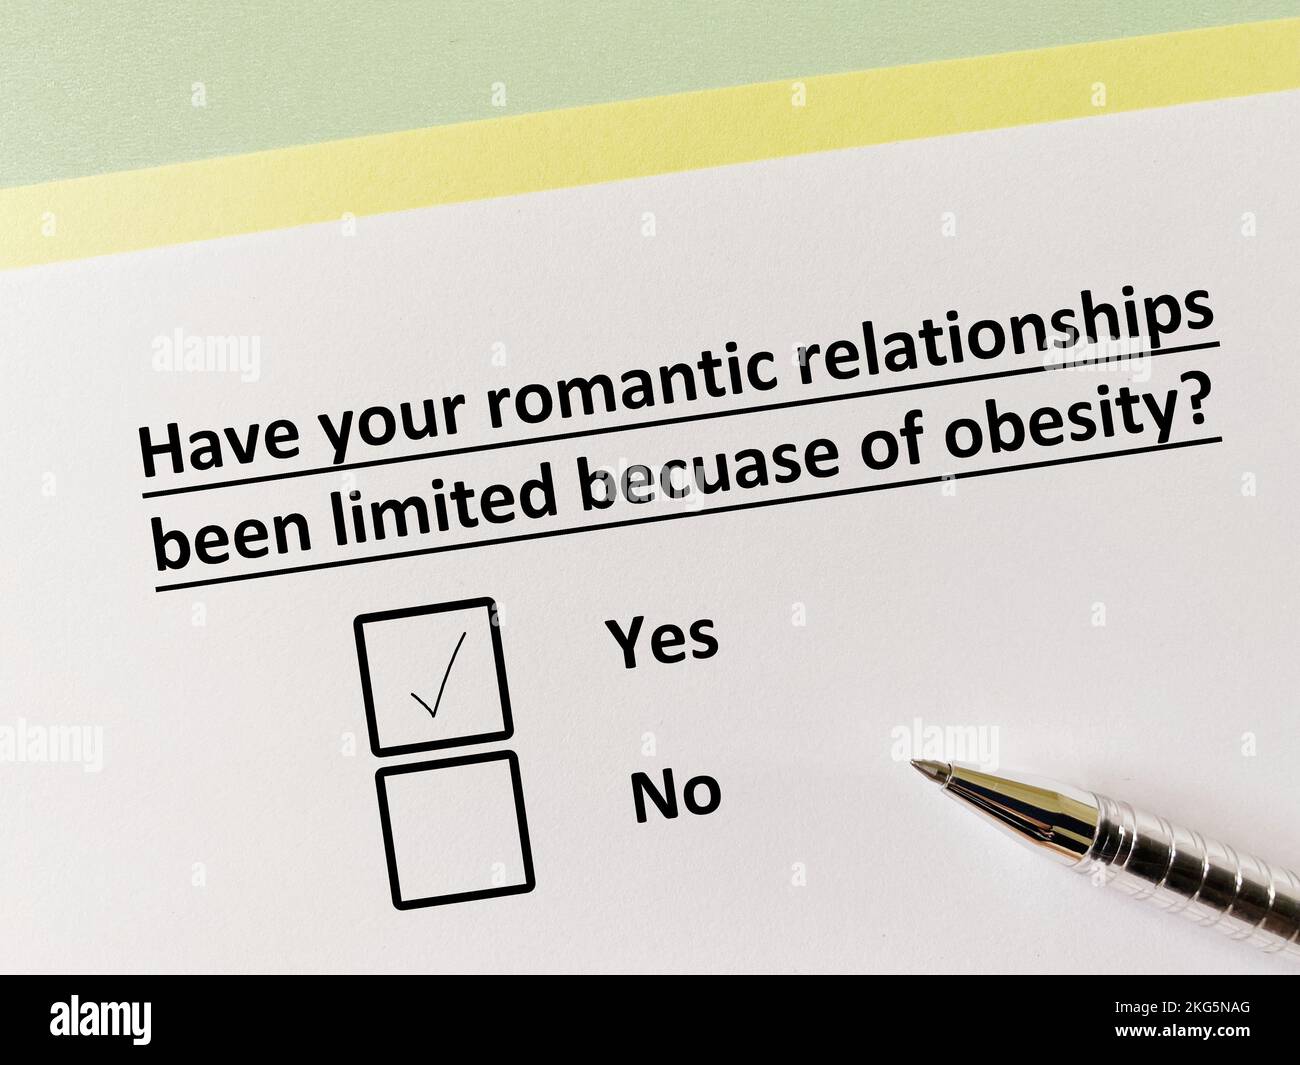 Eine Person beantwortet Fragen zur Ernährung. Seine romantischen Beziehungen sind begrenzt wegen Fettleibigkeit. Stockfoto